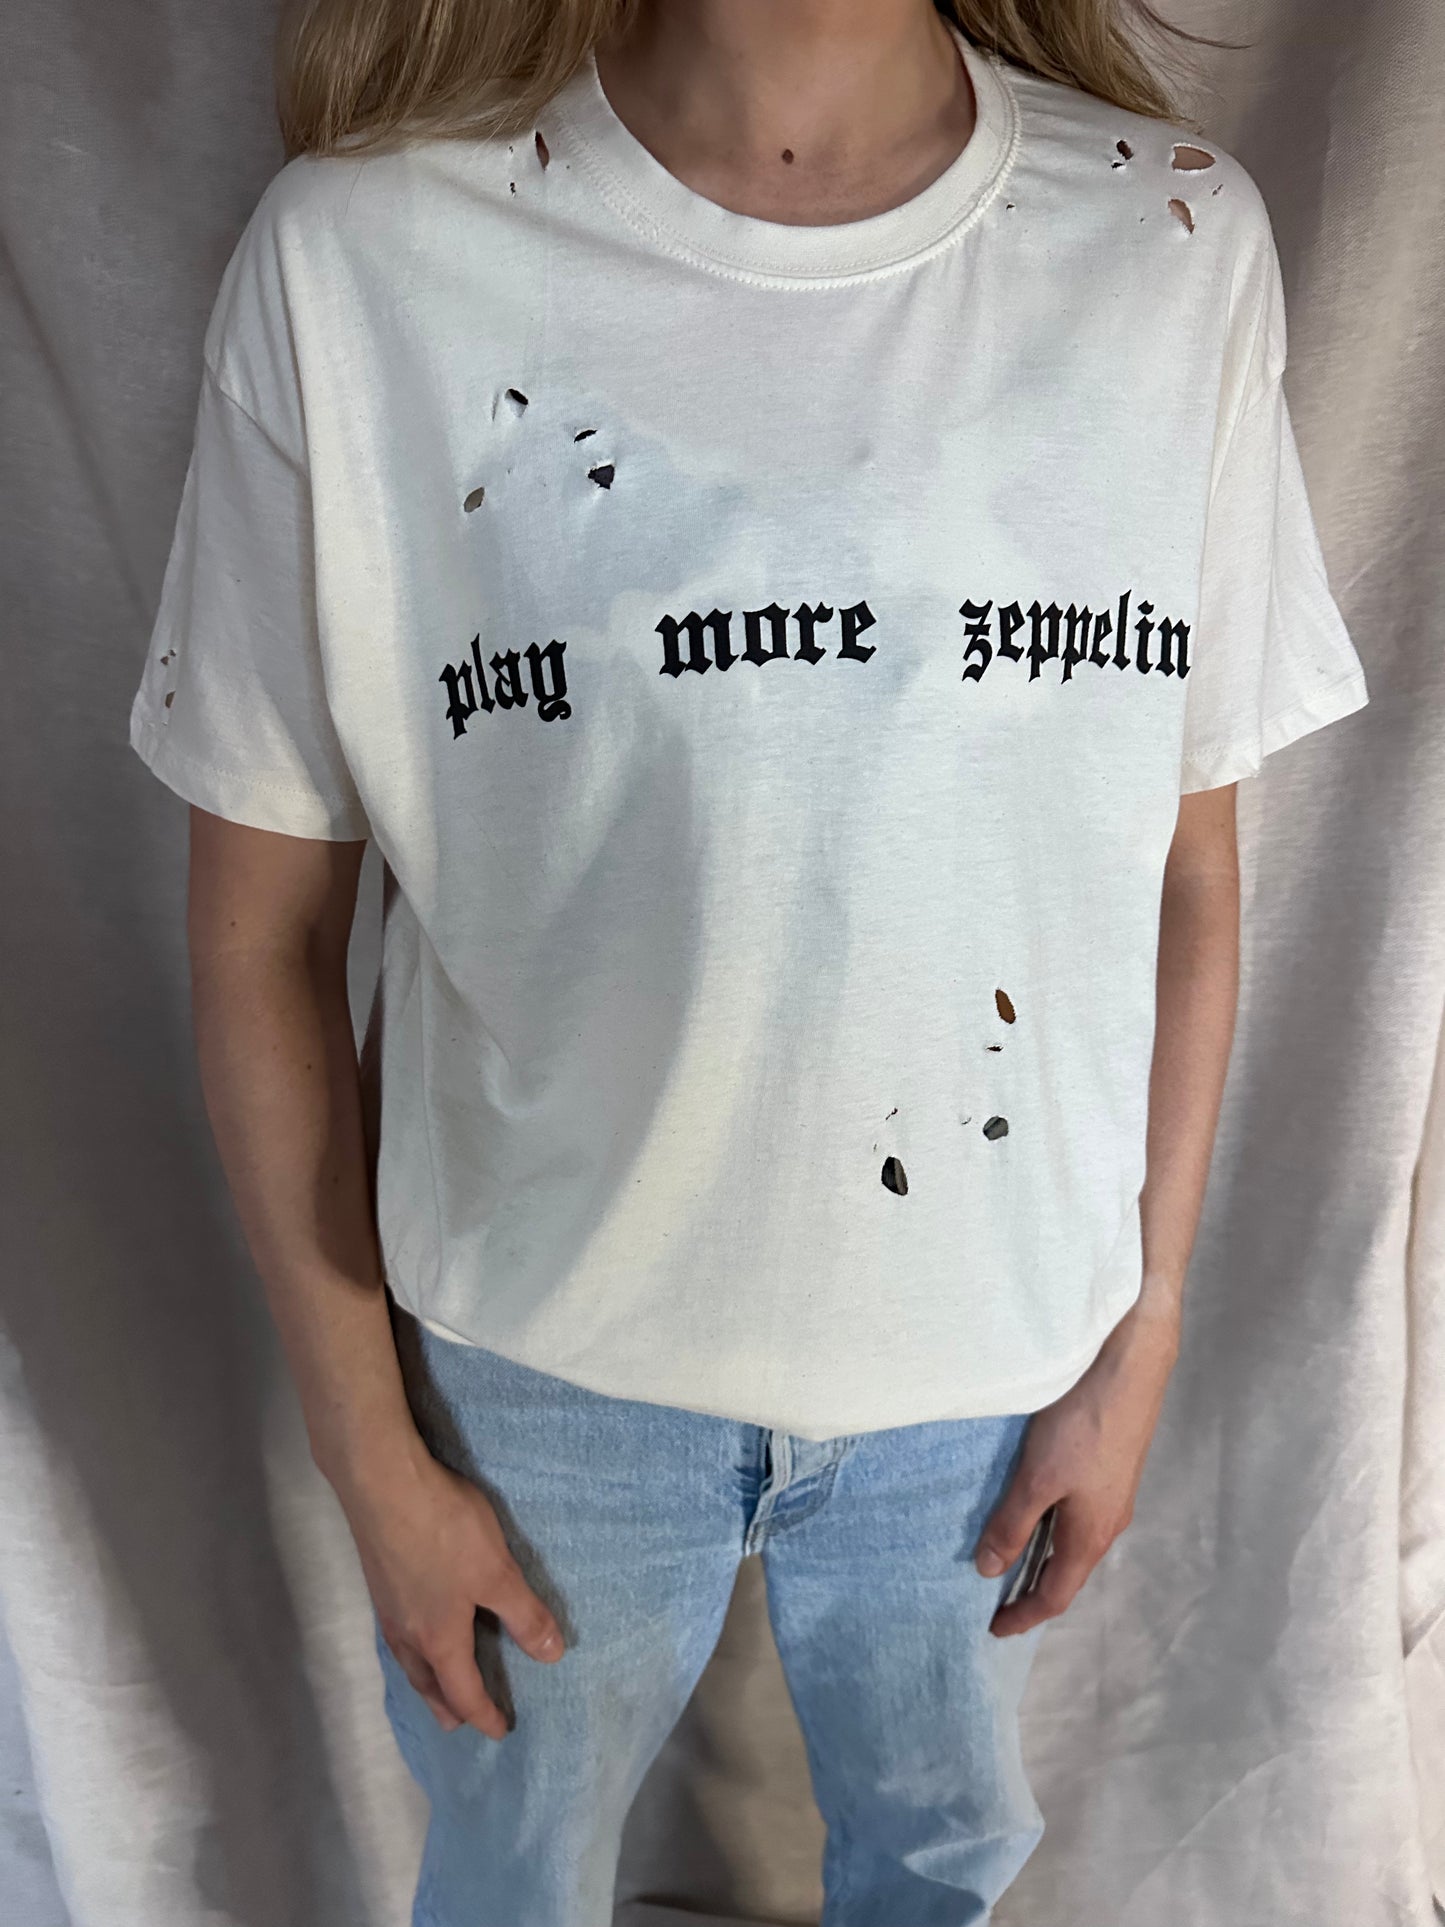 Play More Zeppelin T-Shirt